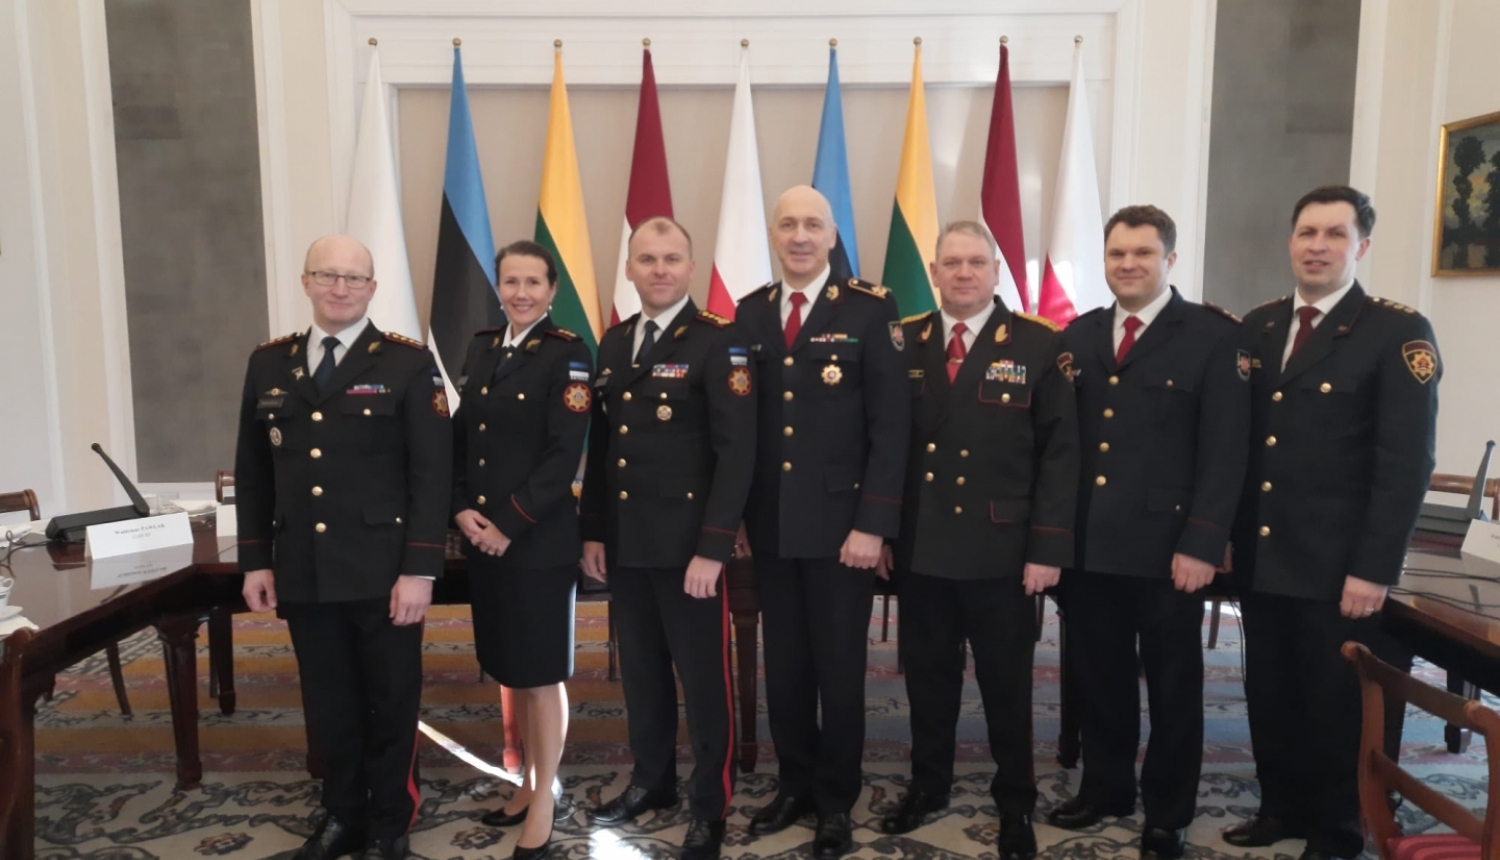 Septiņi konferences dalībnieki, tērpušies savās dienestu formās, stāv pie konferences dalībvalstu karogiem un skatās fotogrāfa virzienā